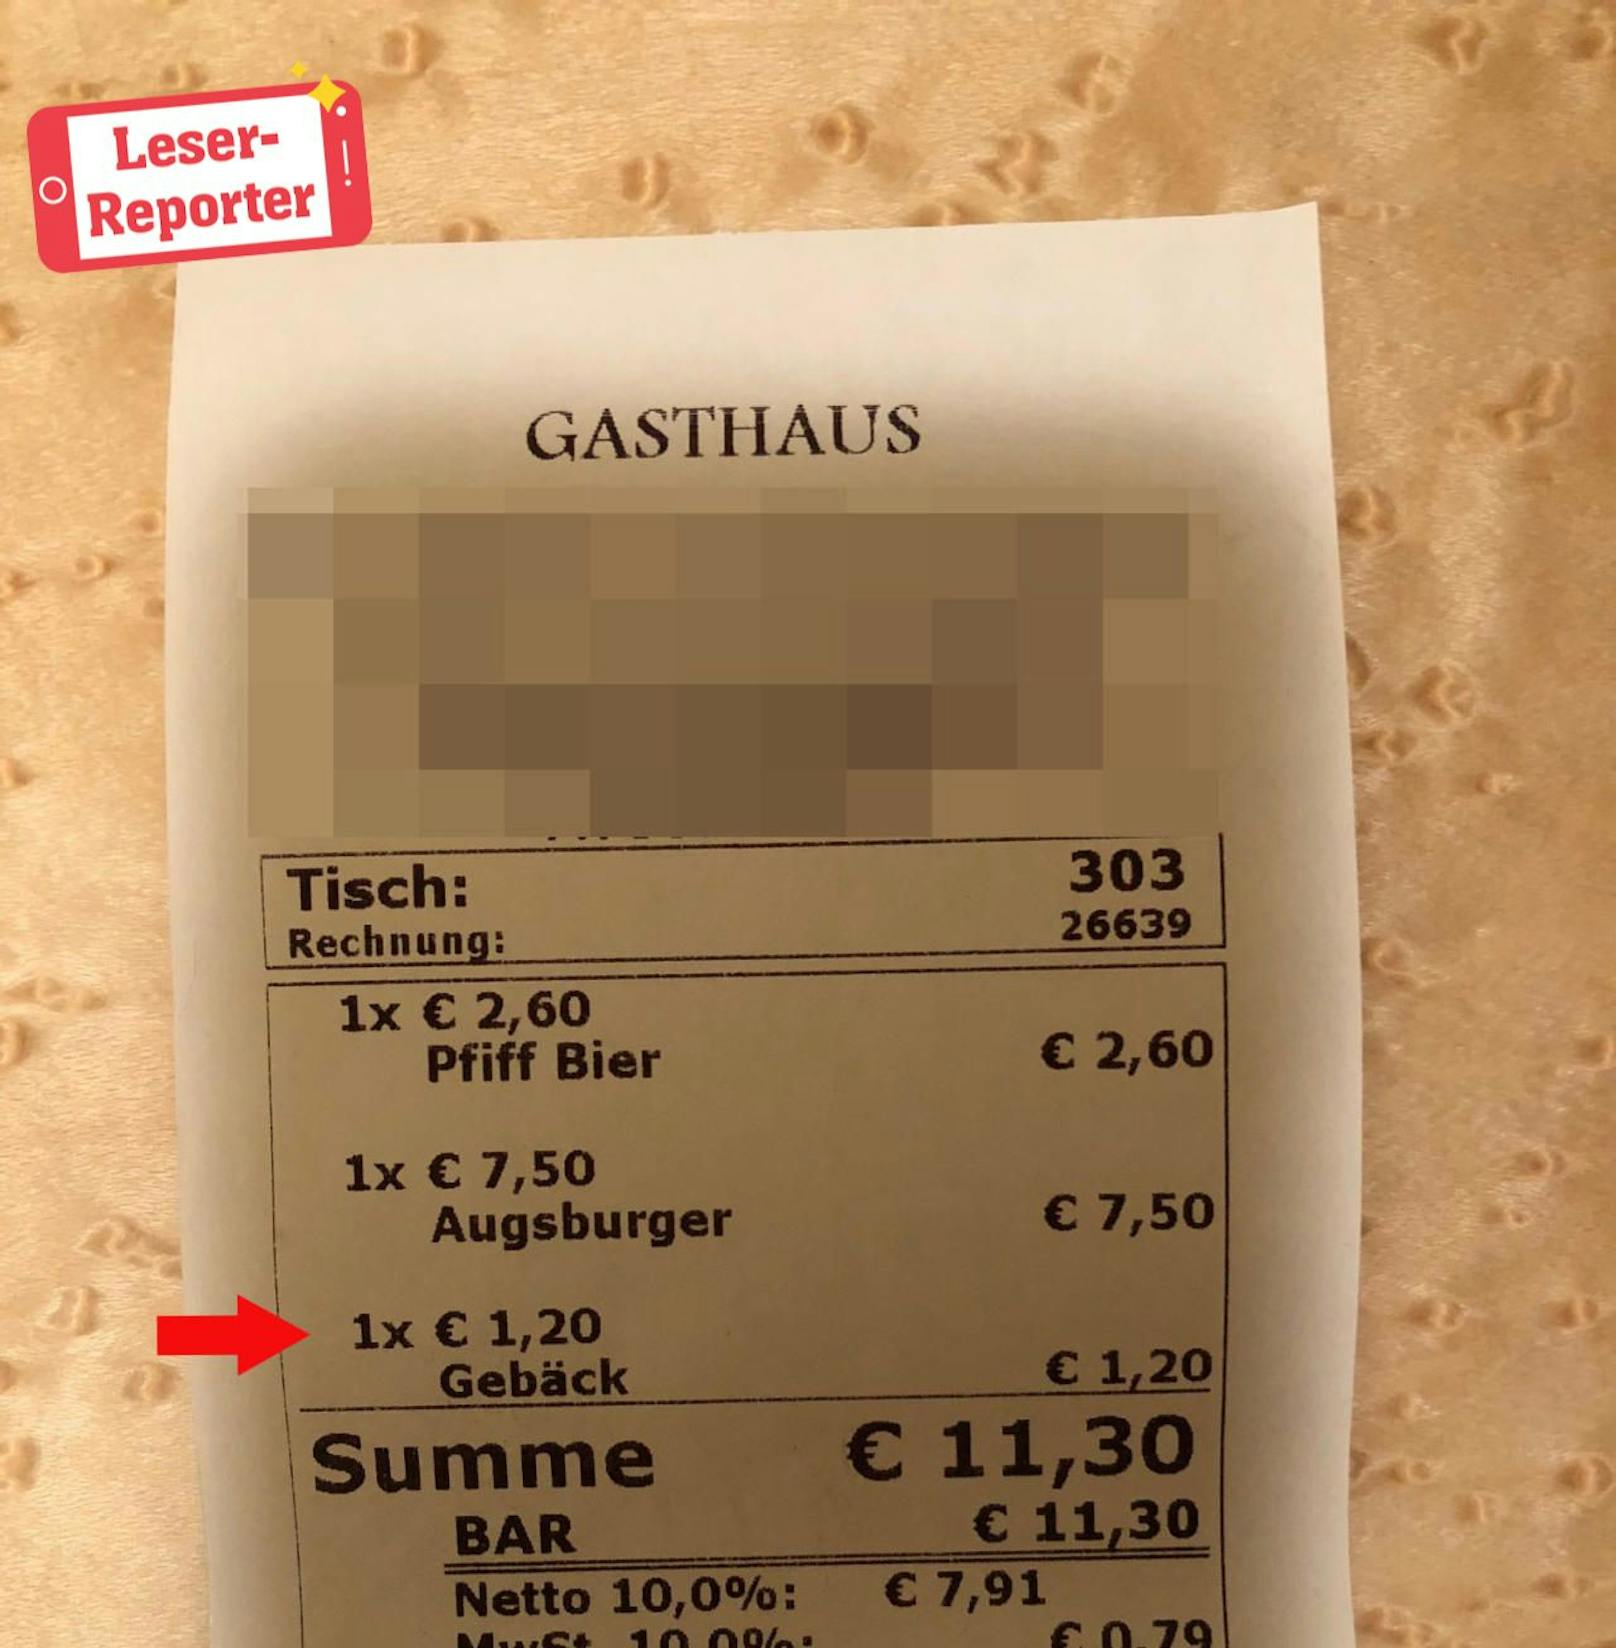 Finden Sie 1,20 Euro zu teuer für eine leere Semmel?